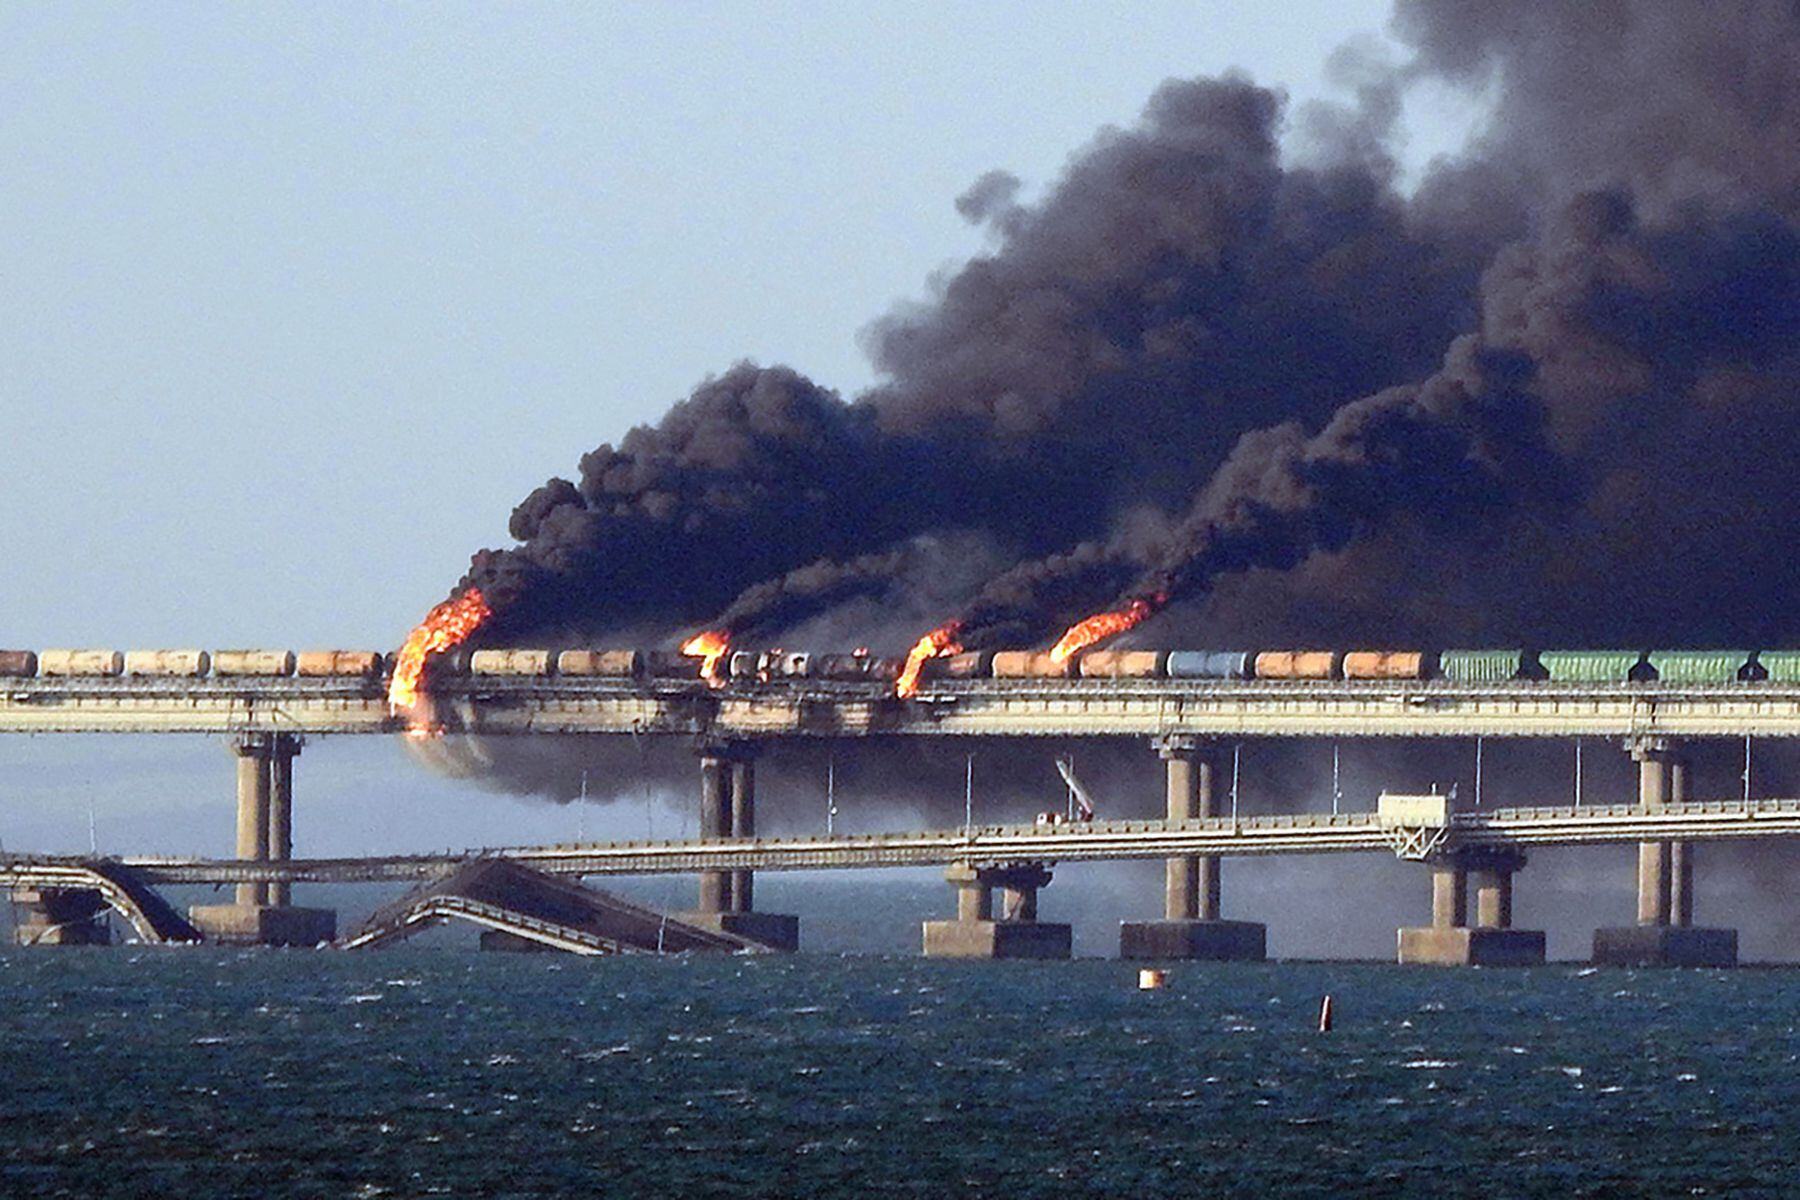 El 8 de octubre de 2022, humo negro salía de un incendio en el puente de Kerch que une Crimea con Rusia, después de que un camión explotara cerca de Kerch. Moscú prometió encontrar a los perpetradores.